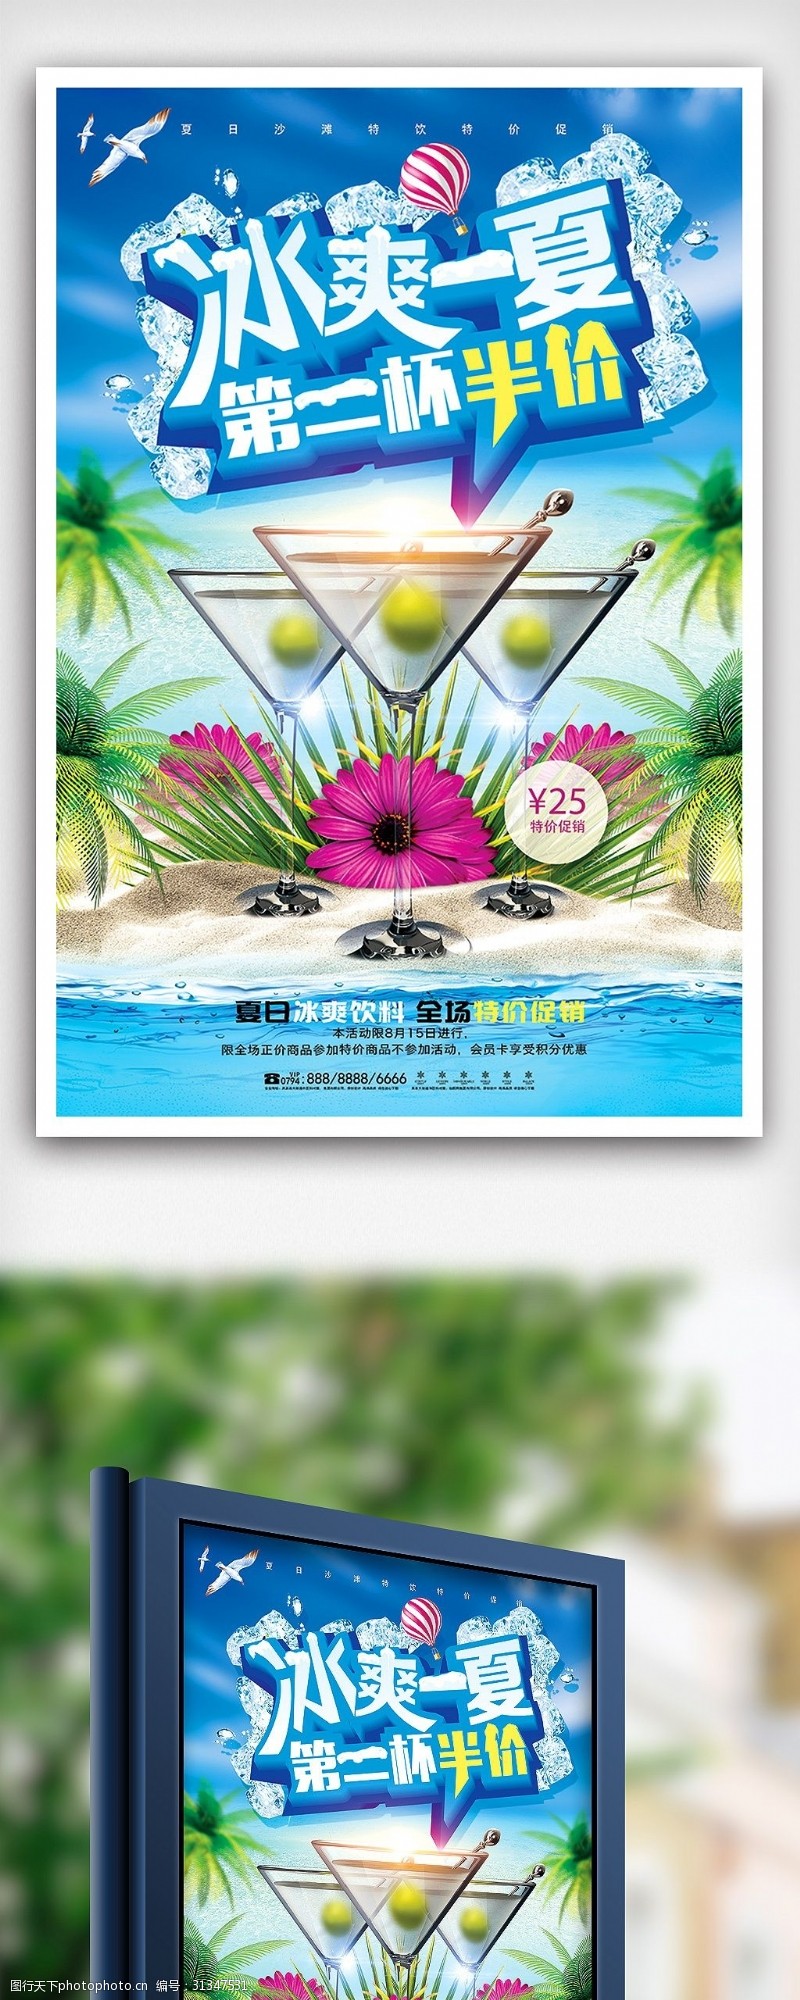 饮料图片免费下载夏季饮料半价促销海报设计